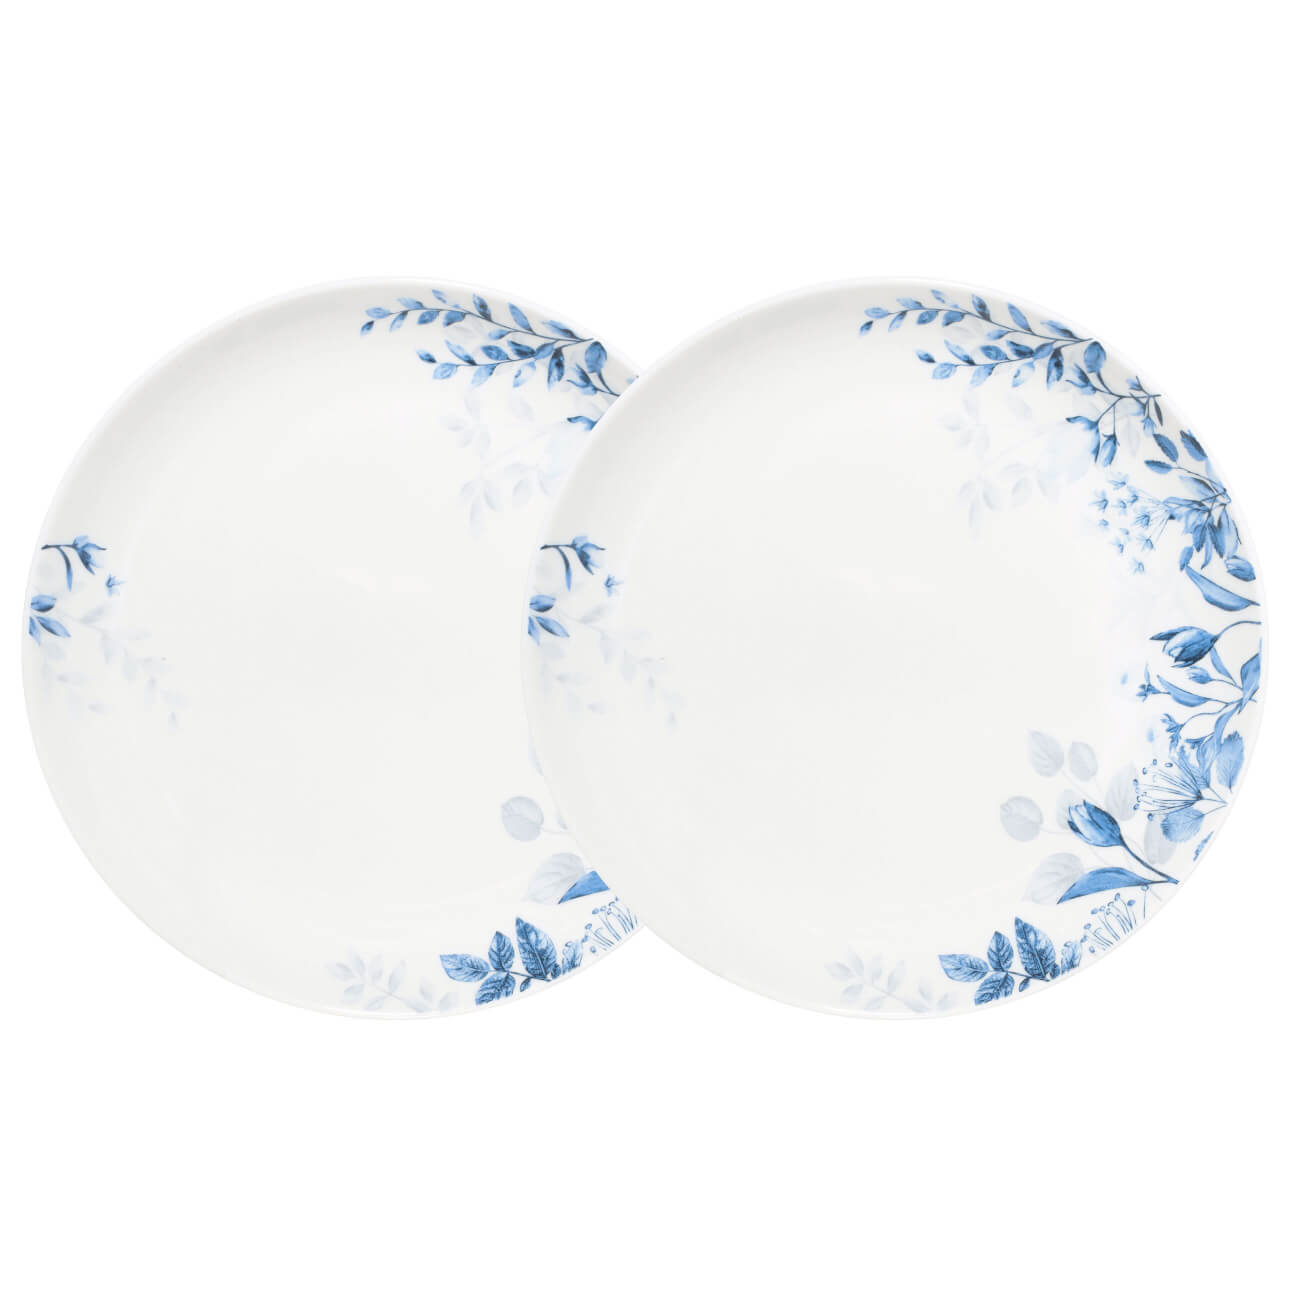 Тарелка закусочная, 21 см, 2 шт, фарфор N, белая, Синие цветы, Royal flower тарелка zdk